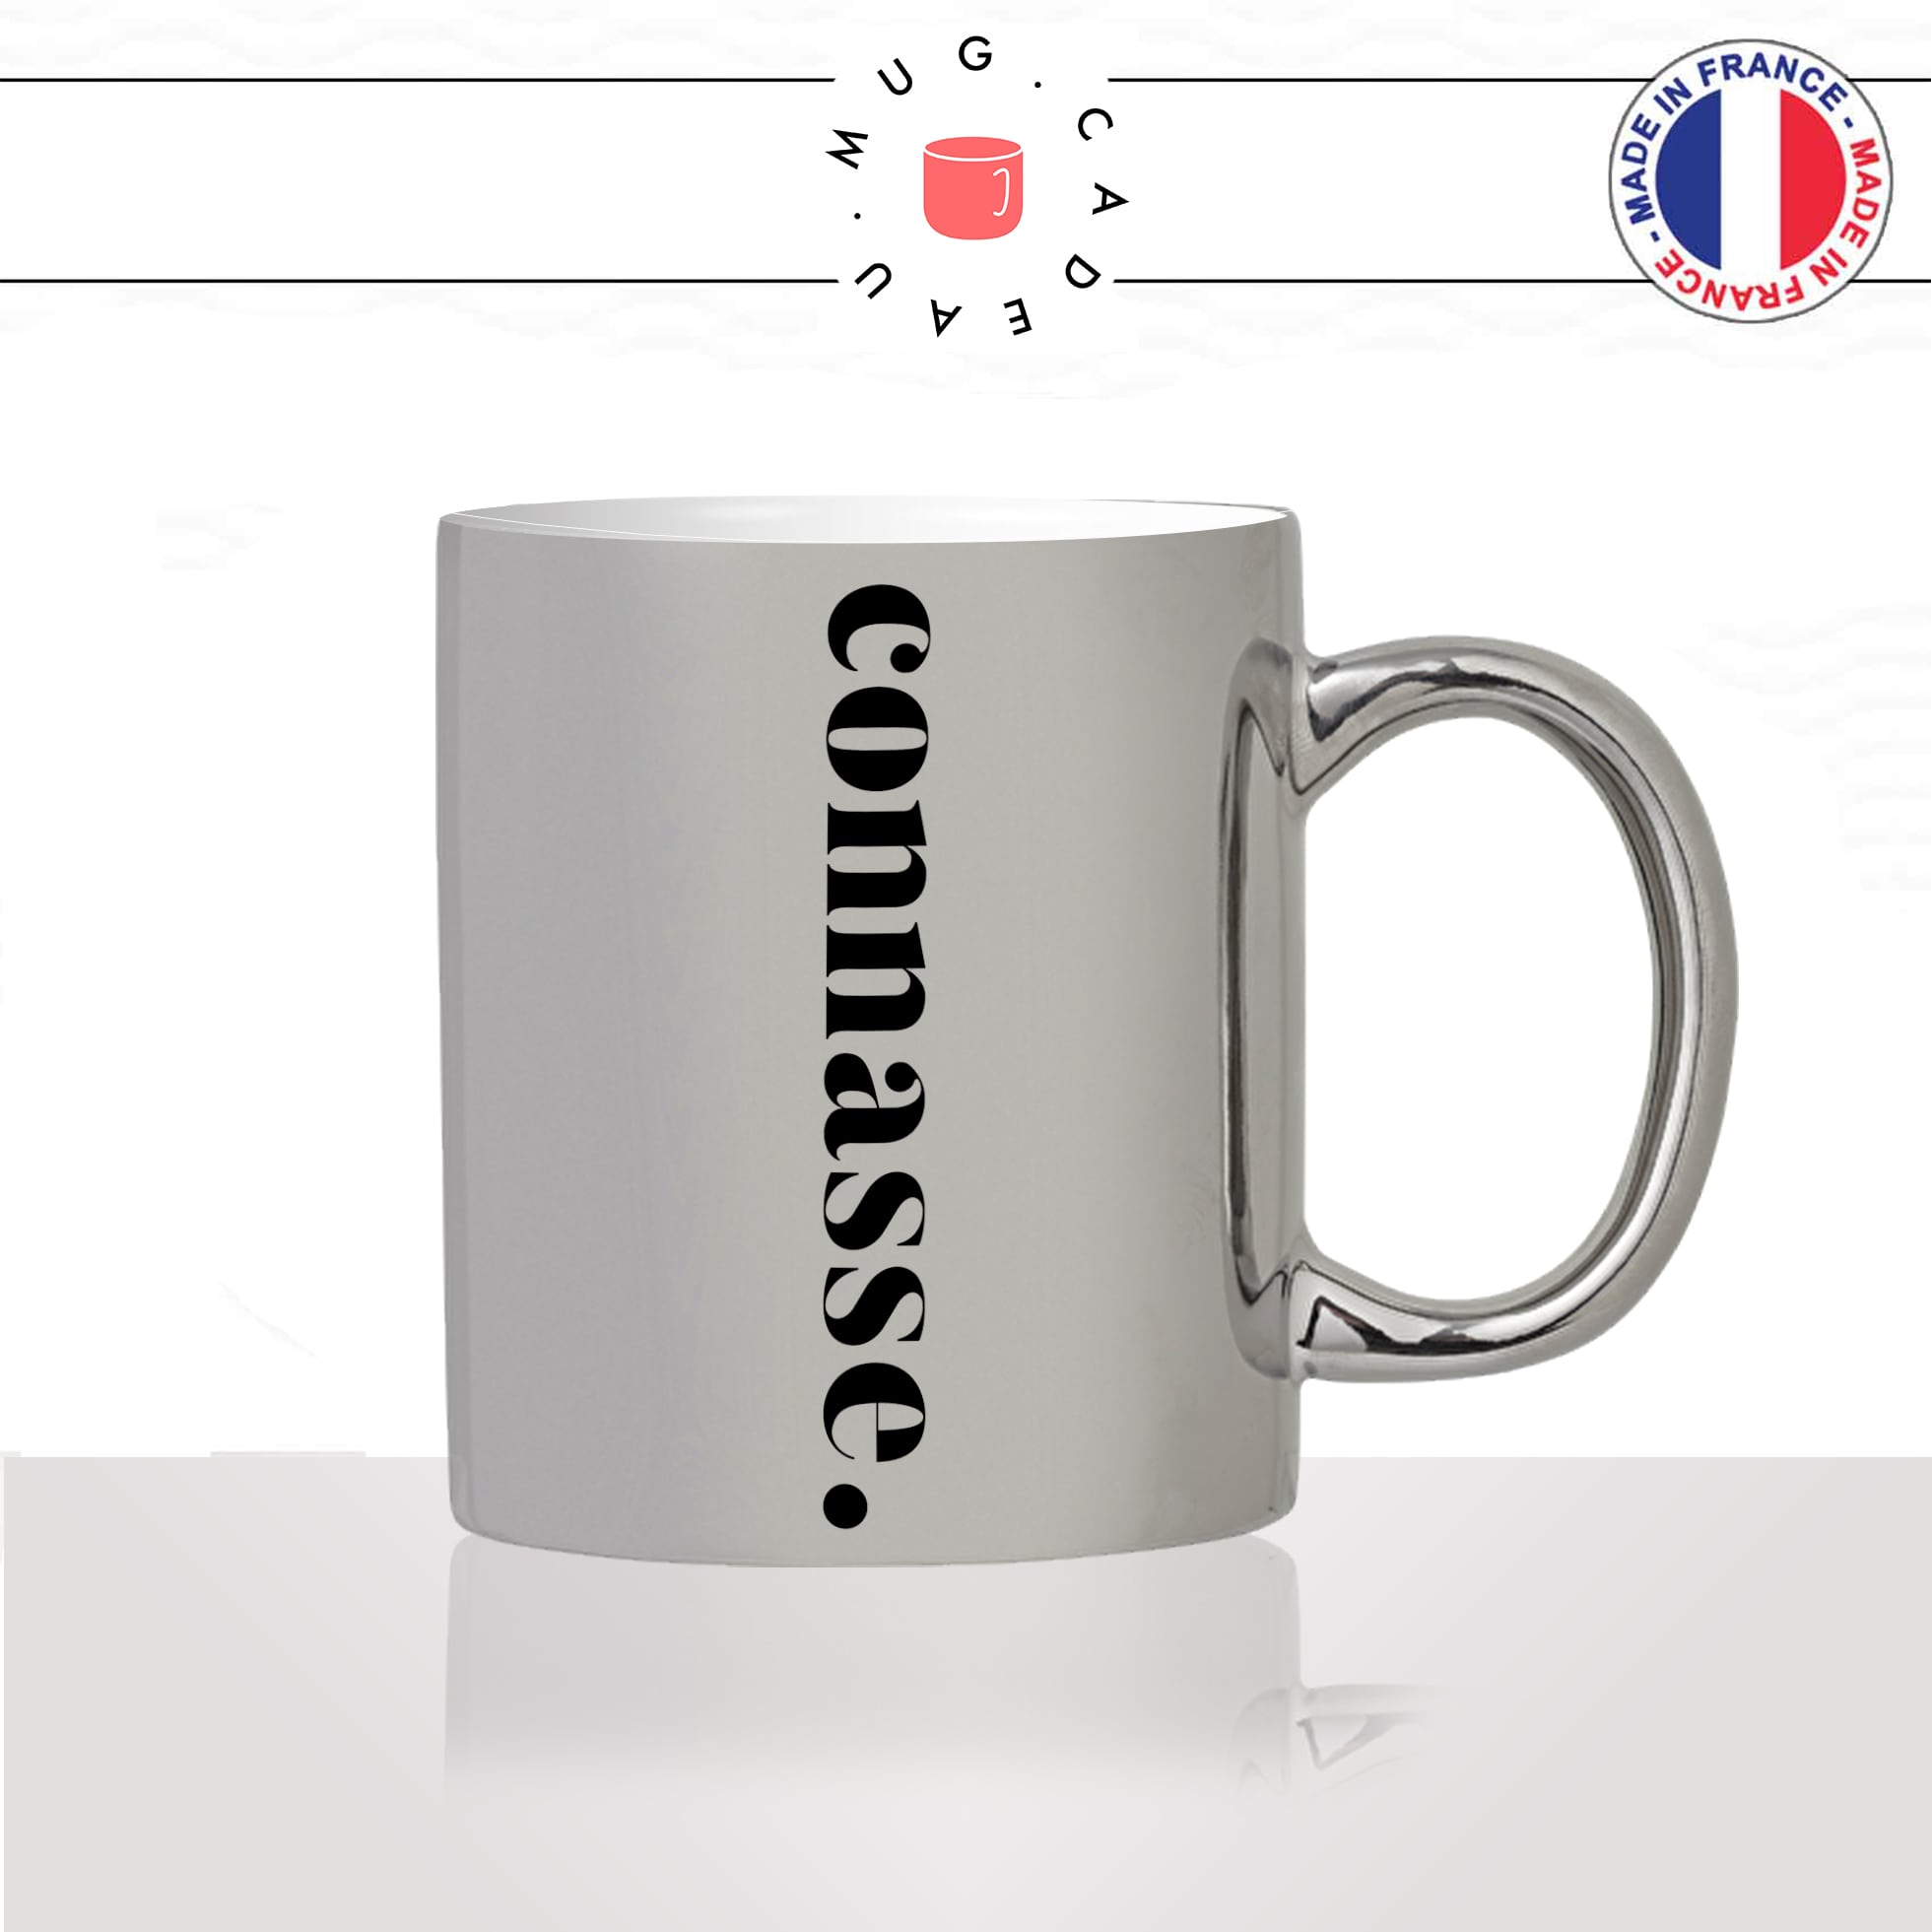 mug-tasse-silver-argenté-connasse-calligraphie-lettrine-mot-femme-conne-couple-décoration-amie-idée-cadeau-original-personnalisé-café-thé2-min